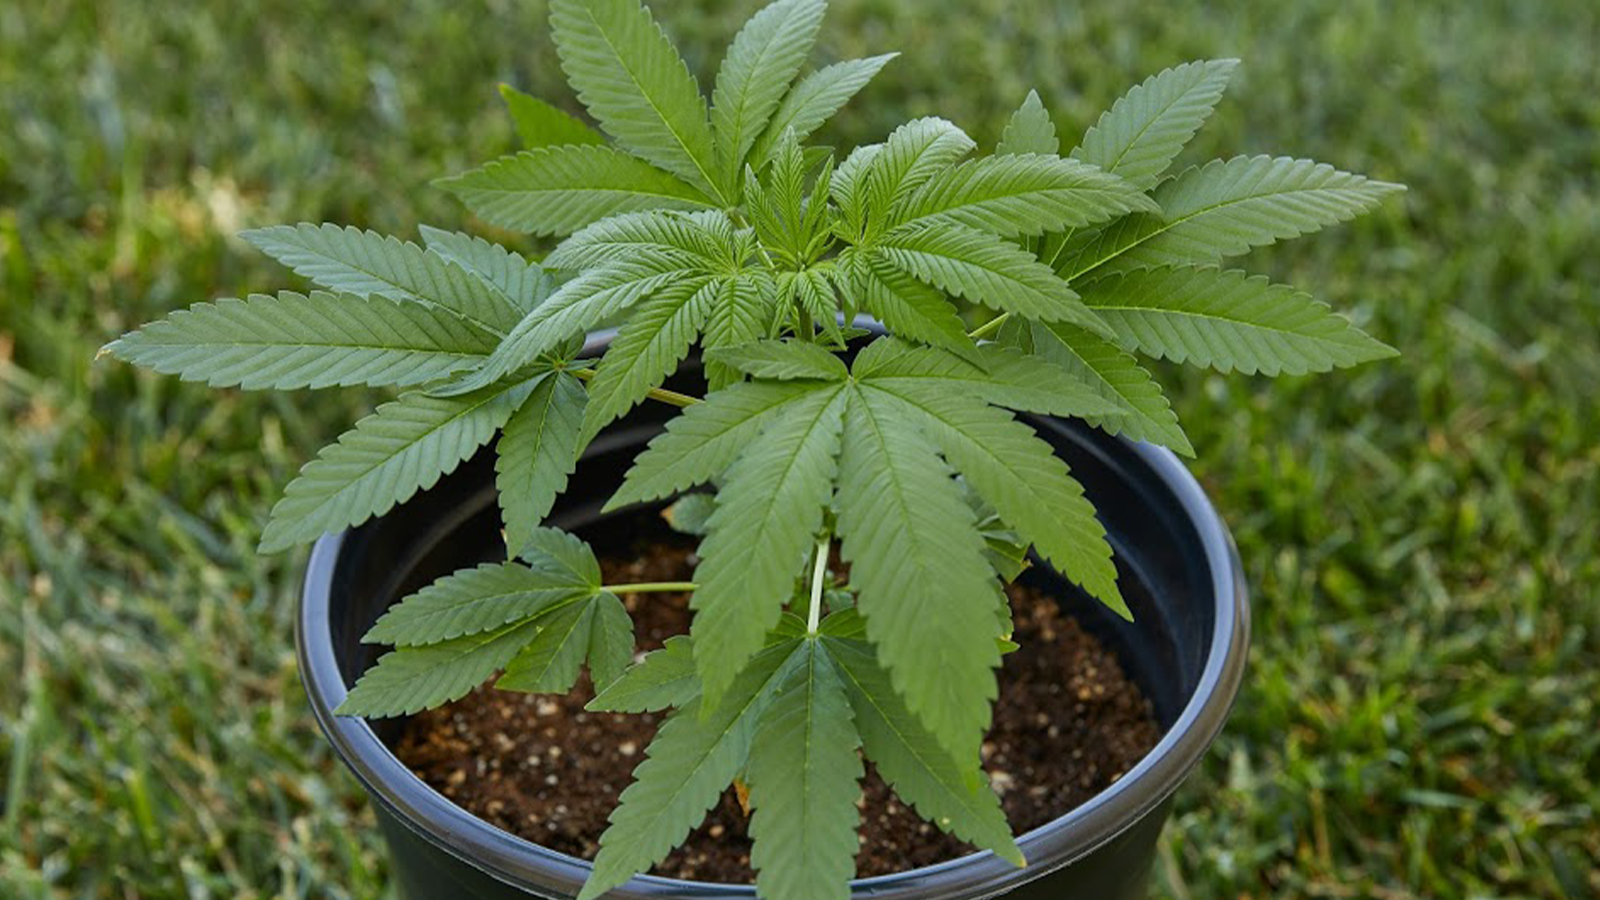 Outdoor marijuana growing equipment